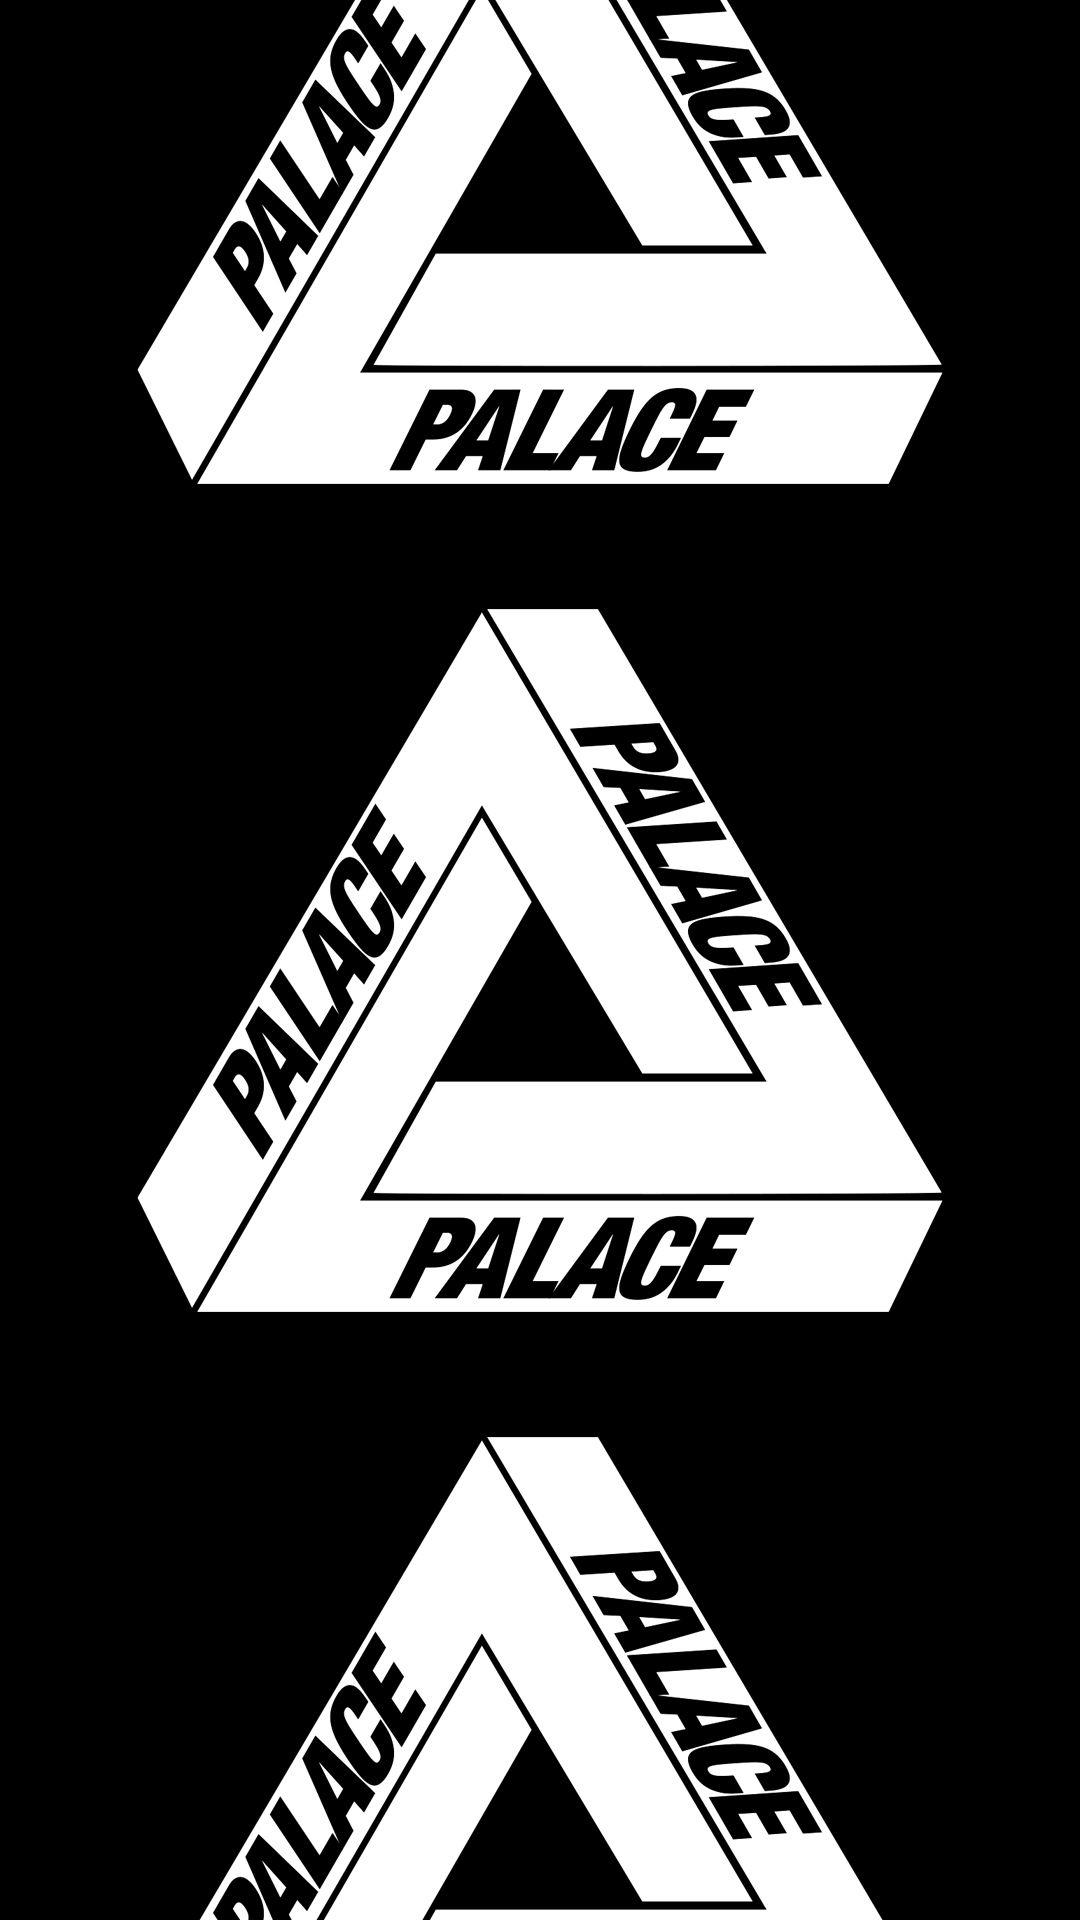 Palace Skateboards [M]